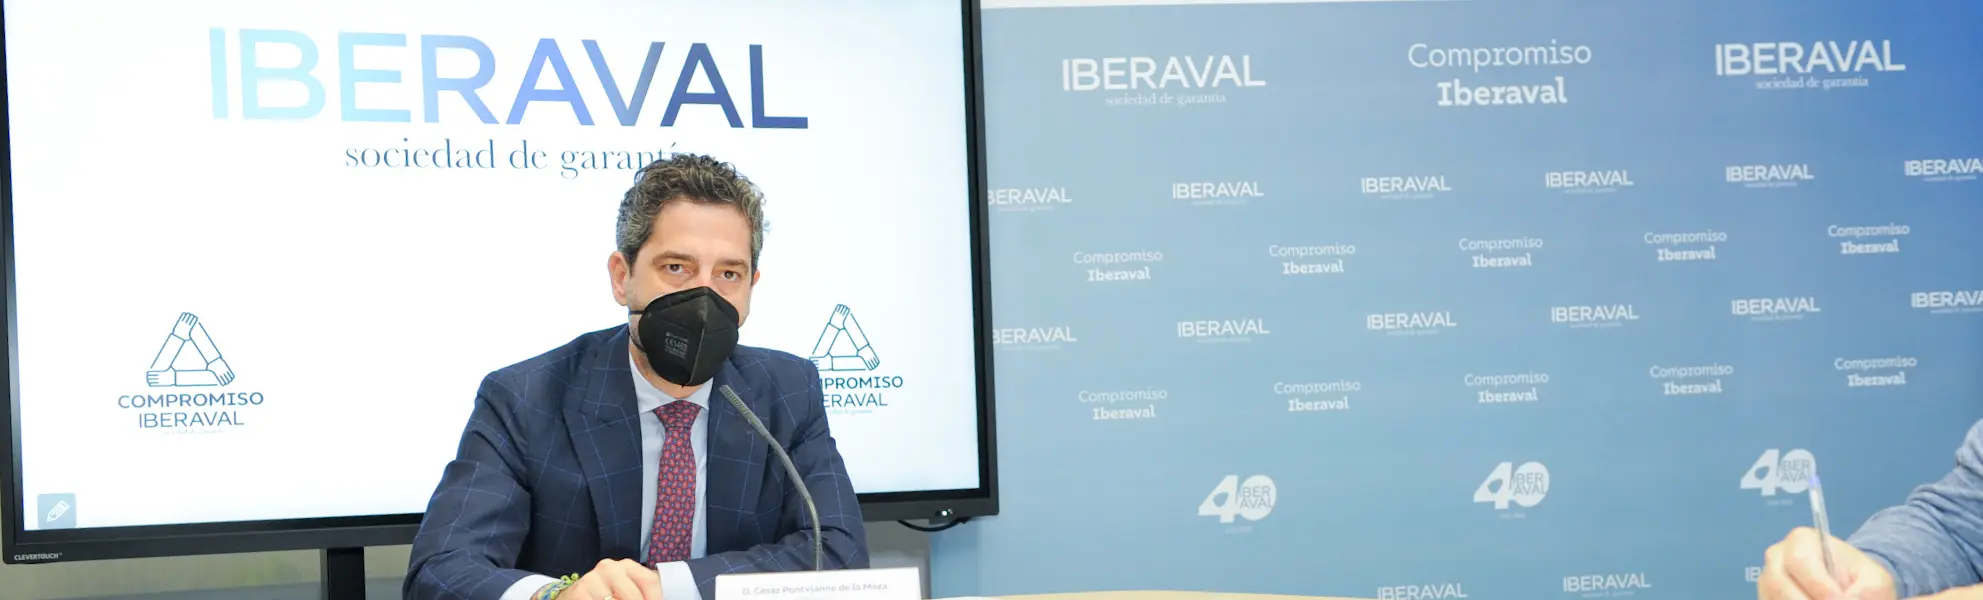 Iberaval creció más de un 5% en el primer cuatrimestre de 2022 con respecto al año anterior ultimas noticias